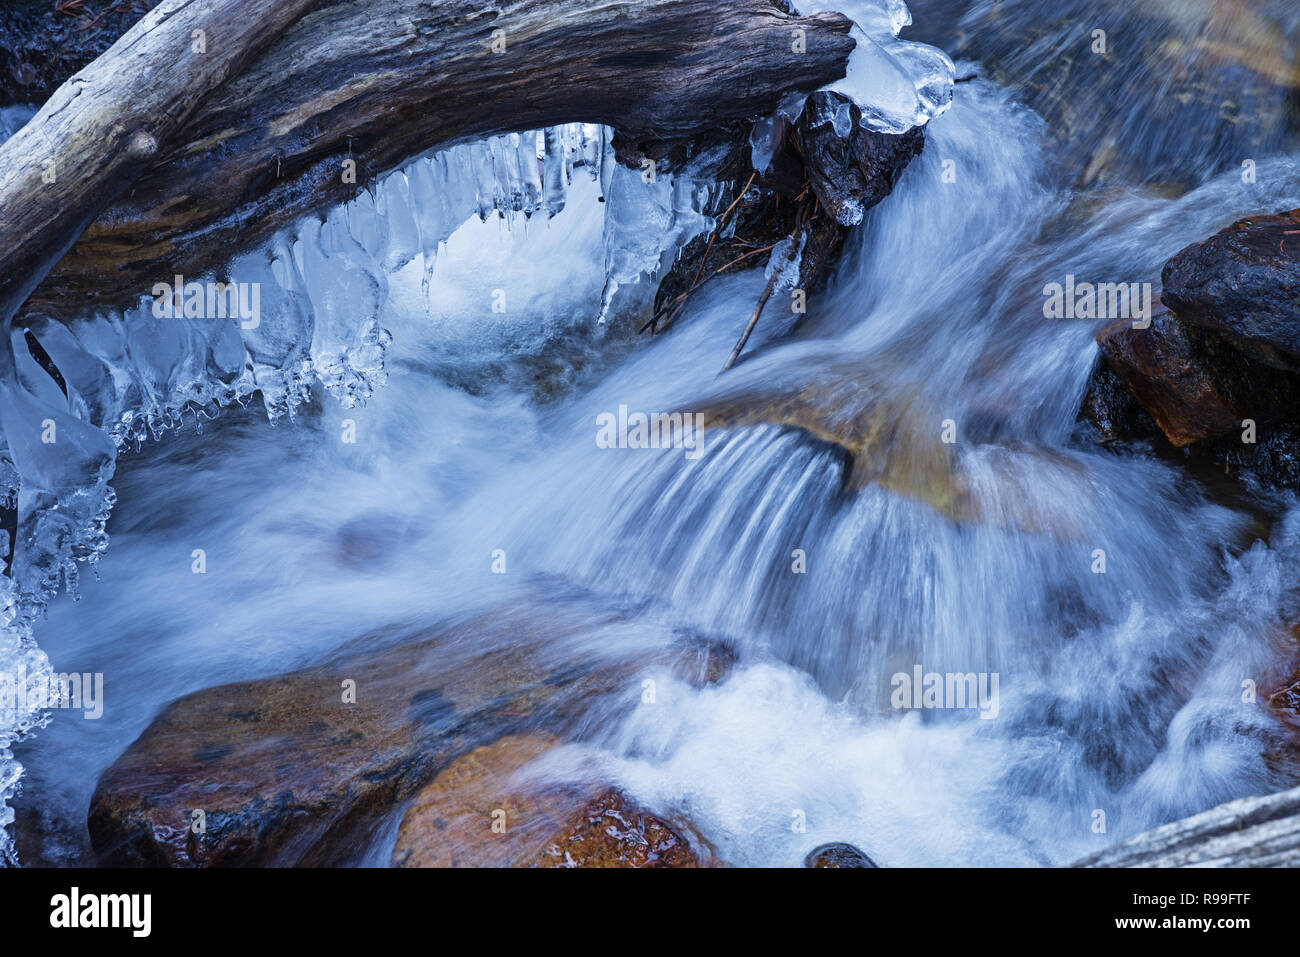 Arroyo Aguas Blancas de invierno con agua fluida y sedosa carámbanos Foto de stock